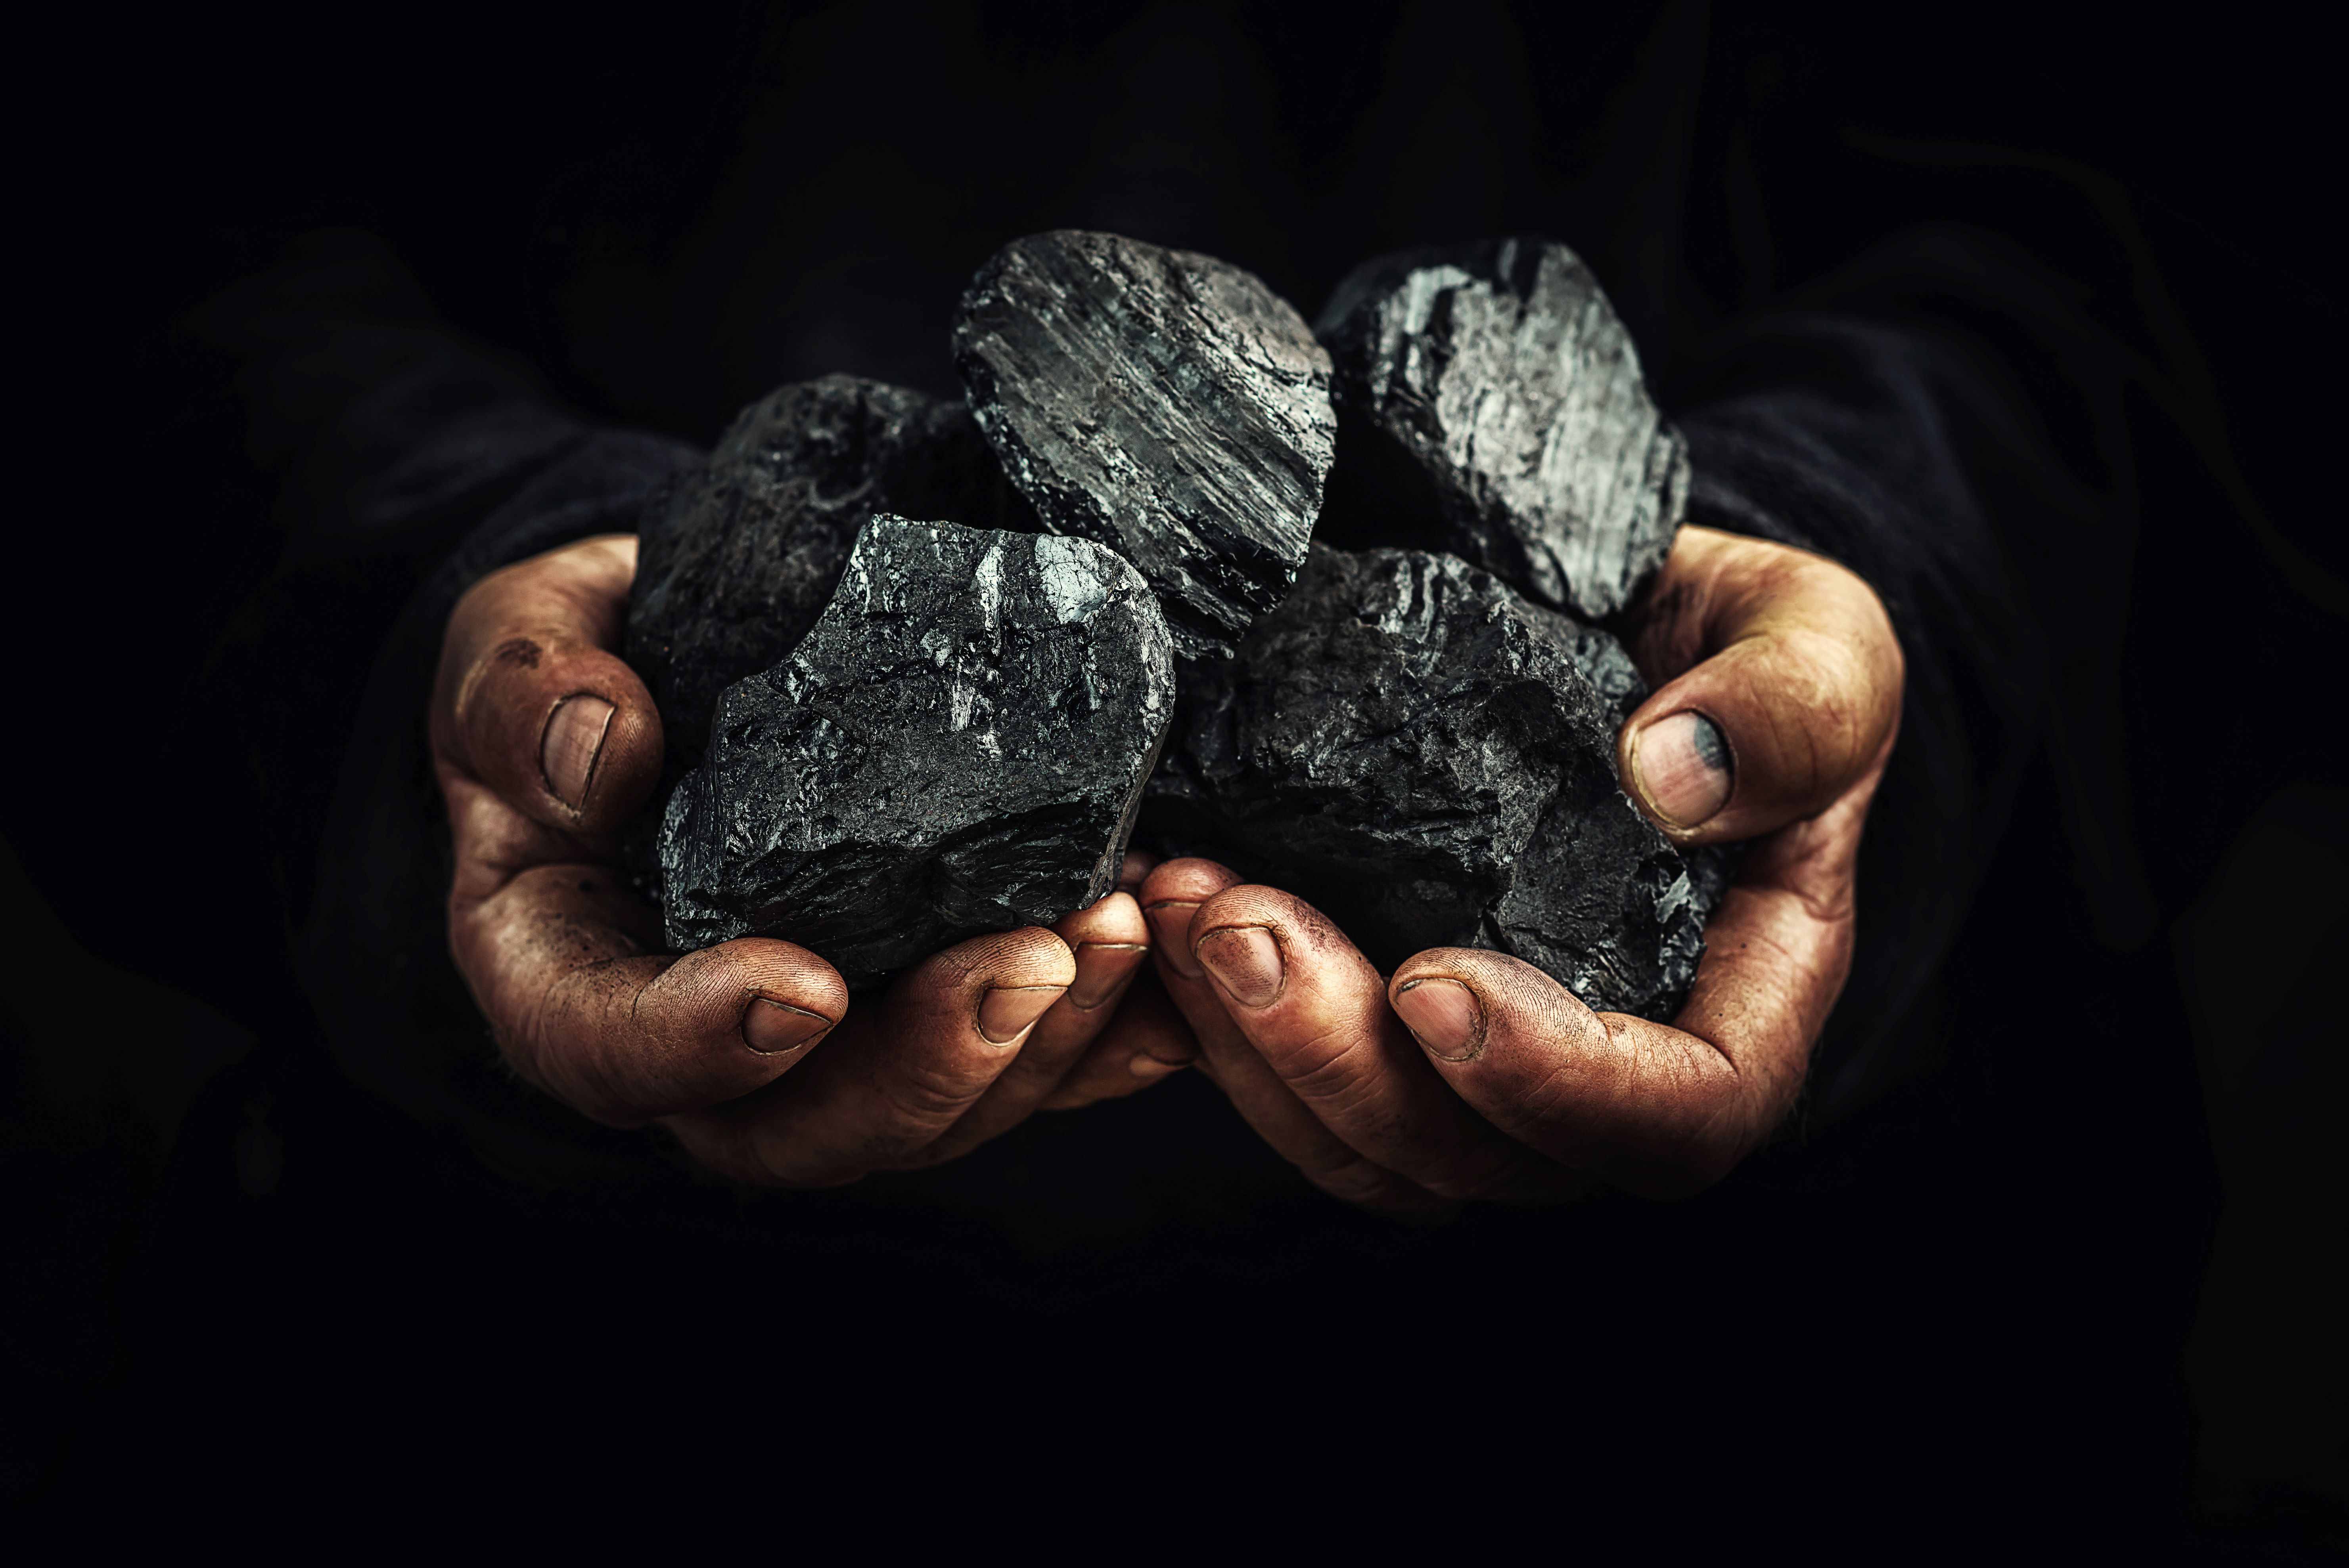 Lumps of coal being held in hands 